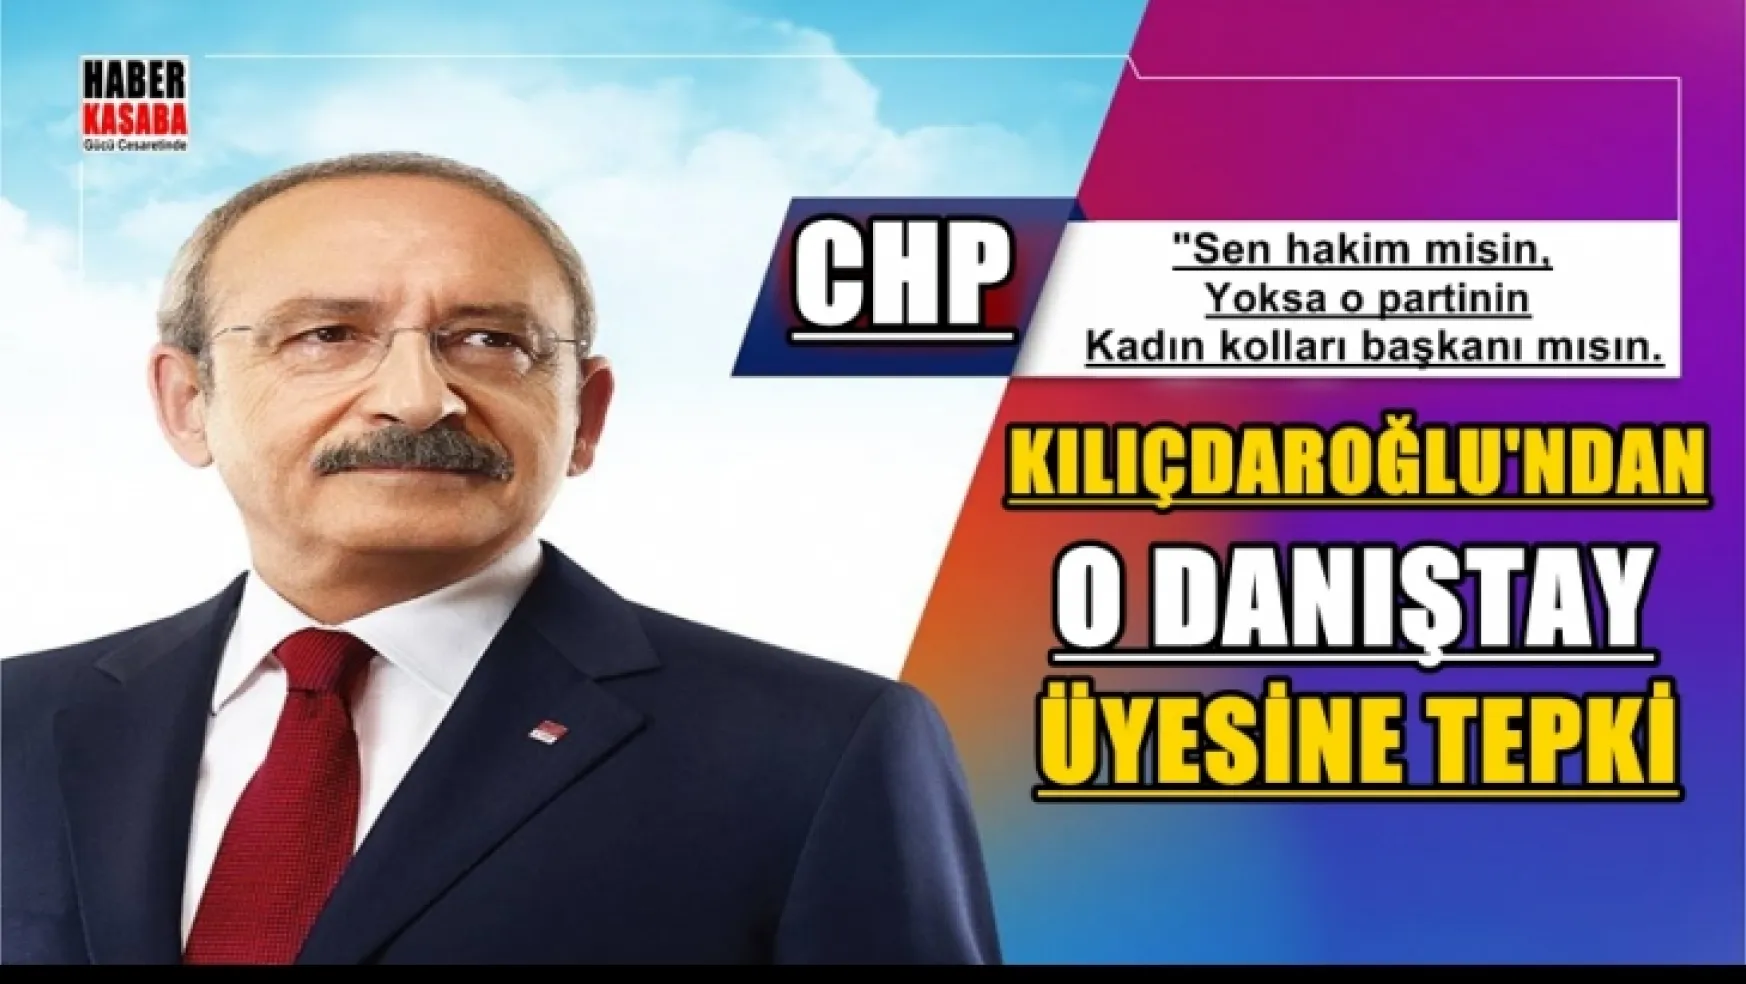 O Danıştay üyesine Kılıçdaroğlu'ndan tepki gecikmedi